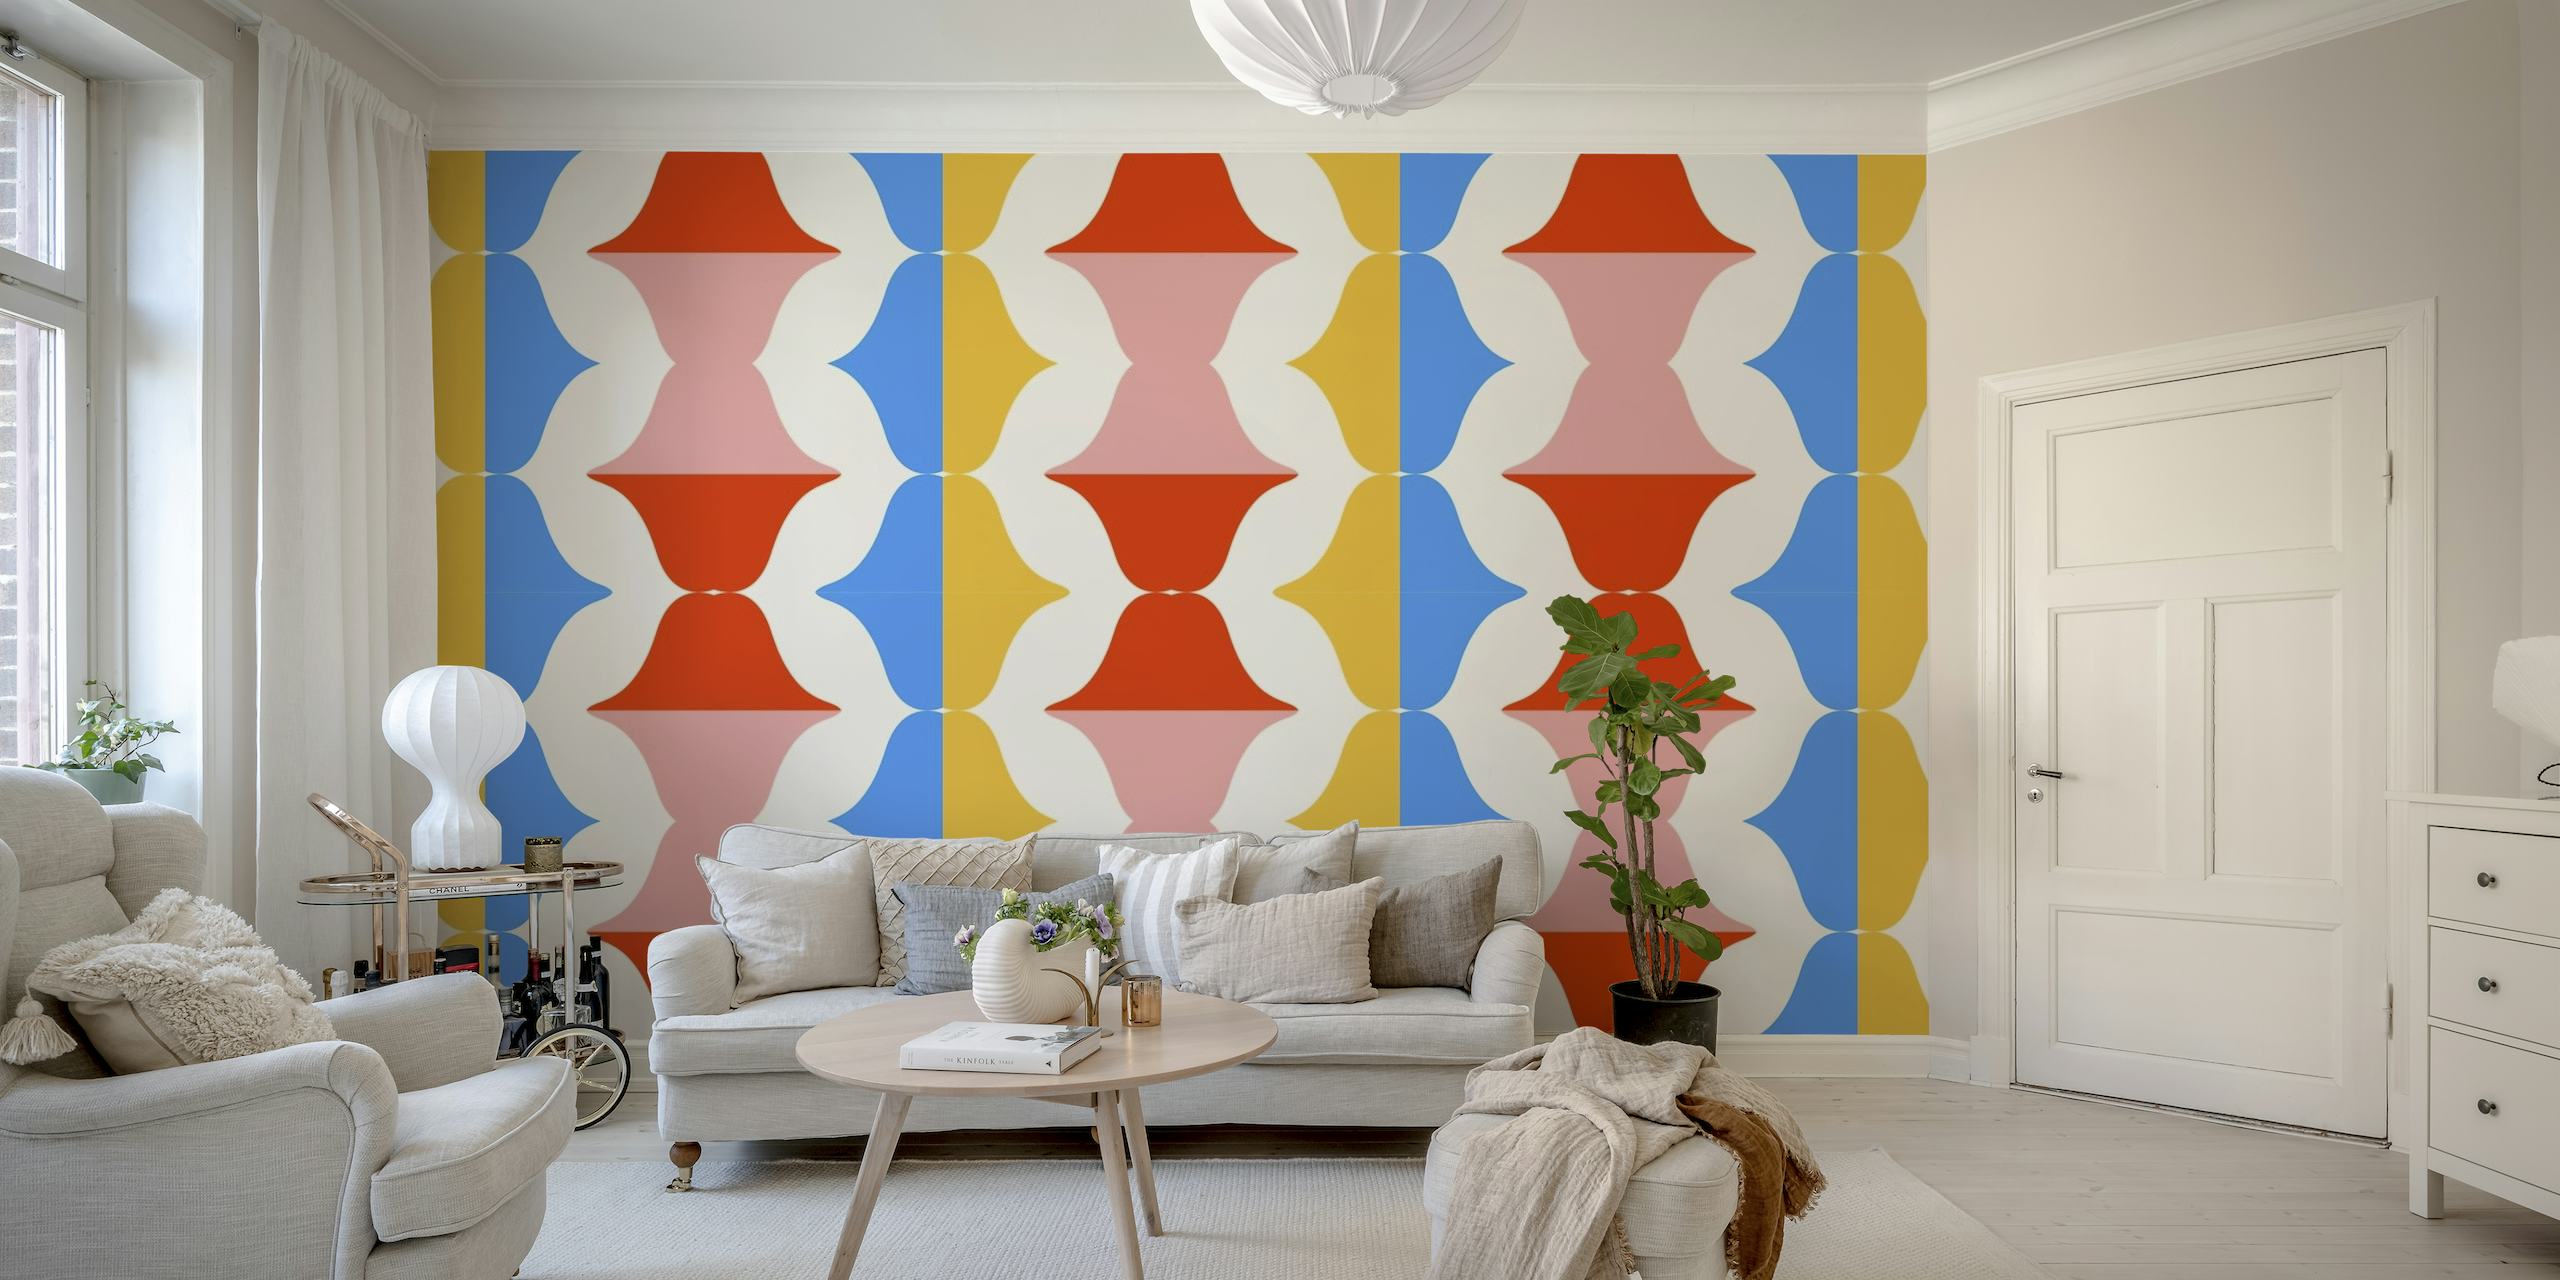 Retro-inspiriertes Wandbild mit Lippenmuster im Pop-Art-Stil auf einem geometrischen Hintergrund in Blau, Orange und Rosa.